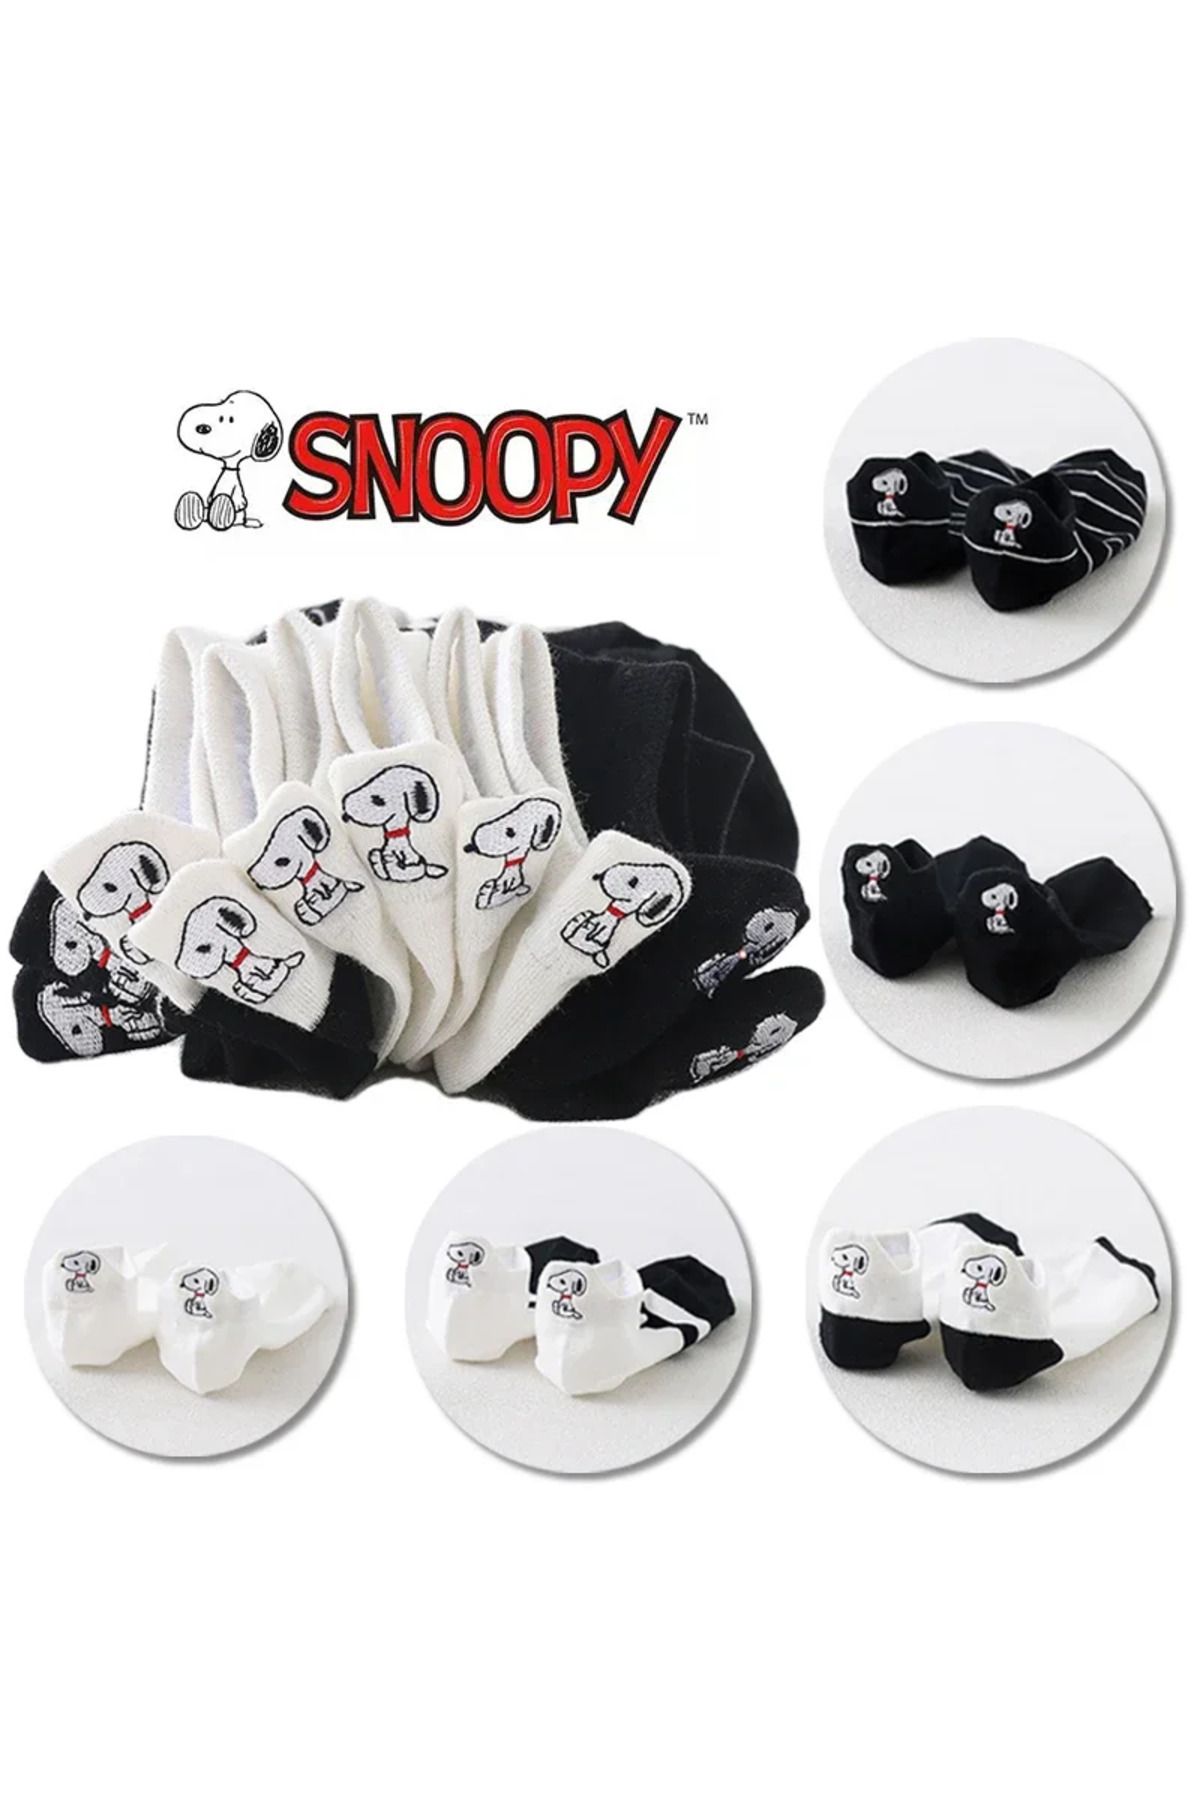 Sockmanya Женские 5 пар черно-белых носков с милыми вышитыми узорами Snoopy çrmnya-0655263a5iyhghSnp2